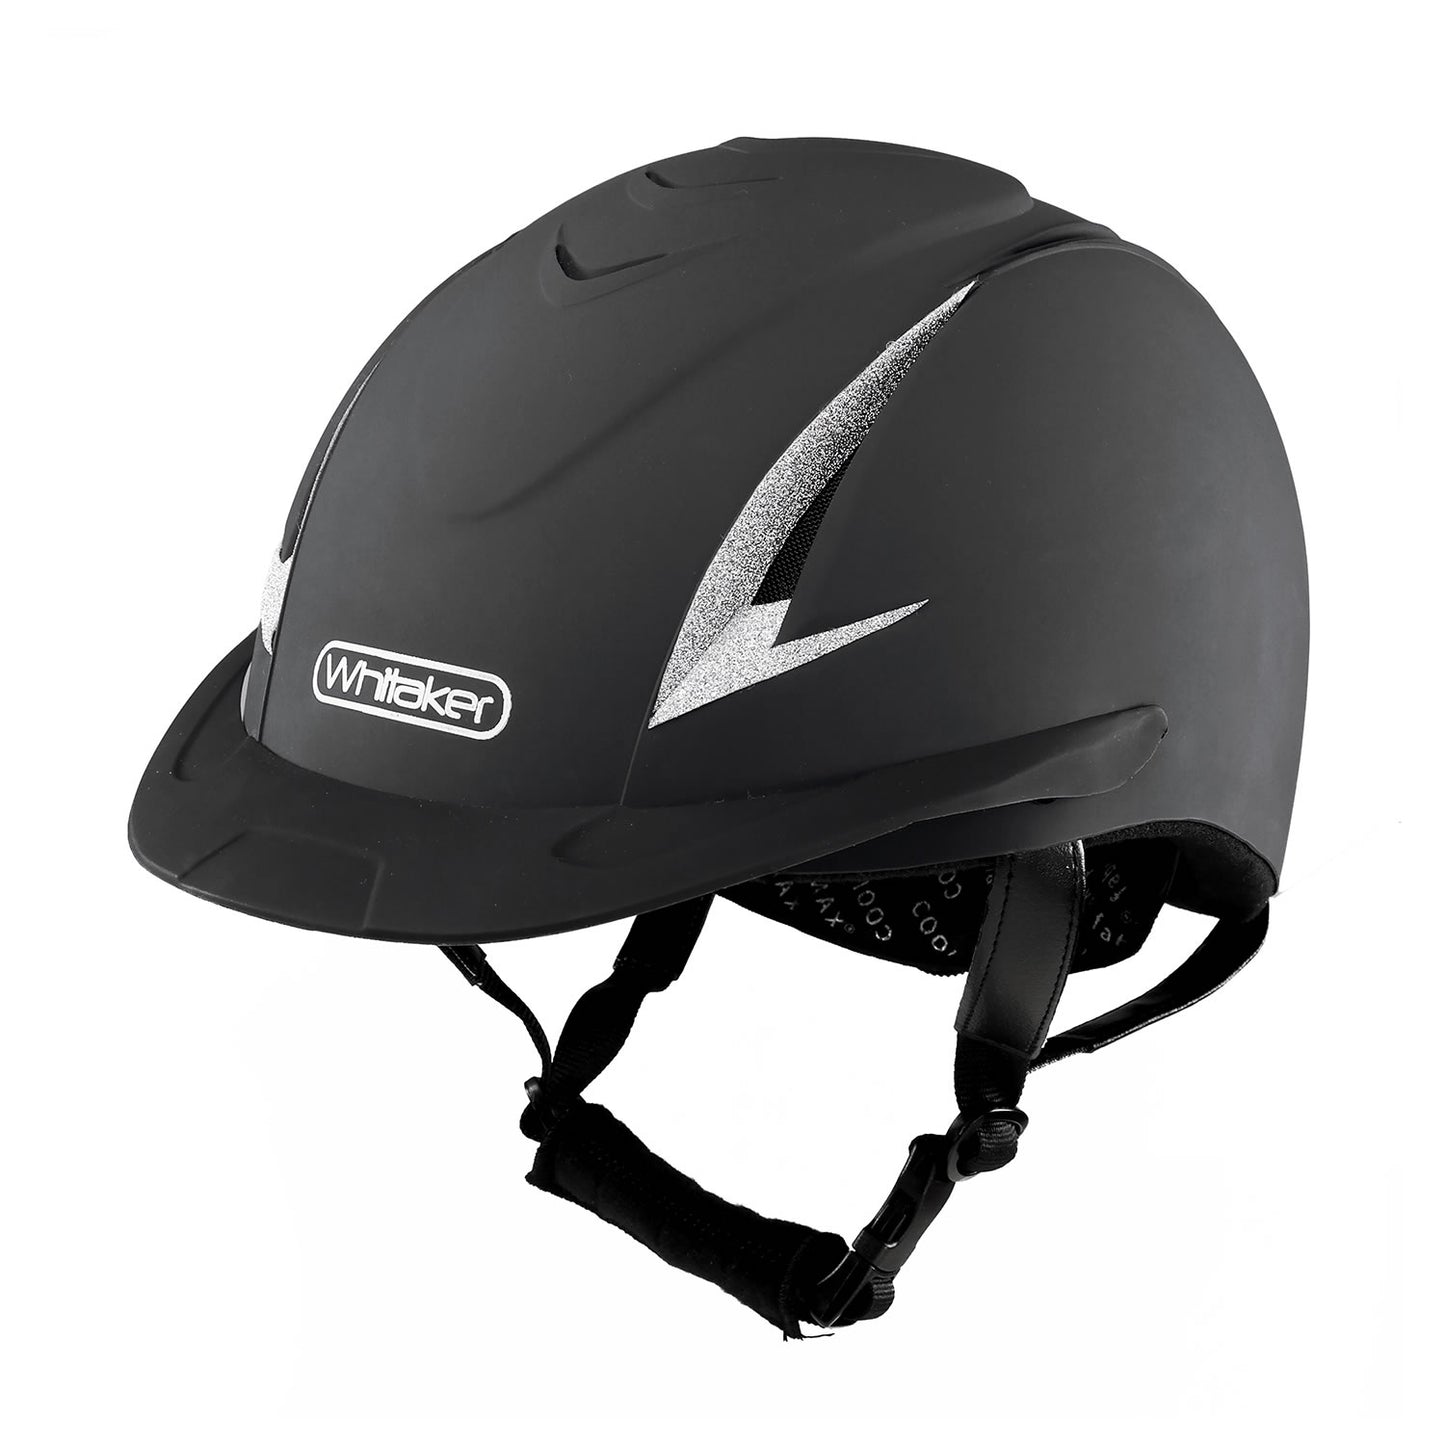 Whitaker NRG Sparkly Helmet